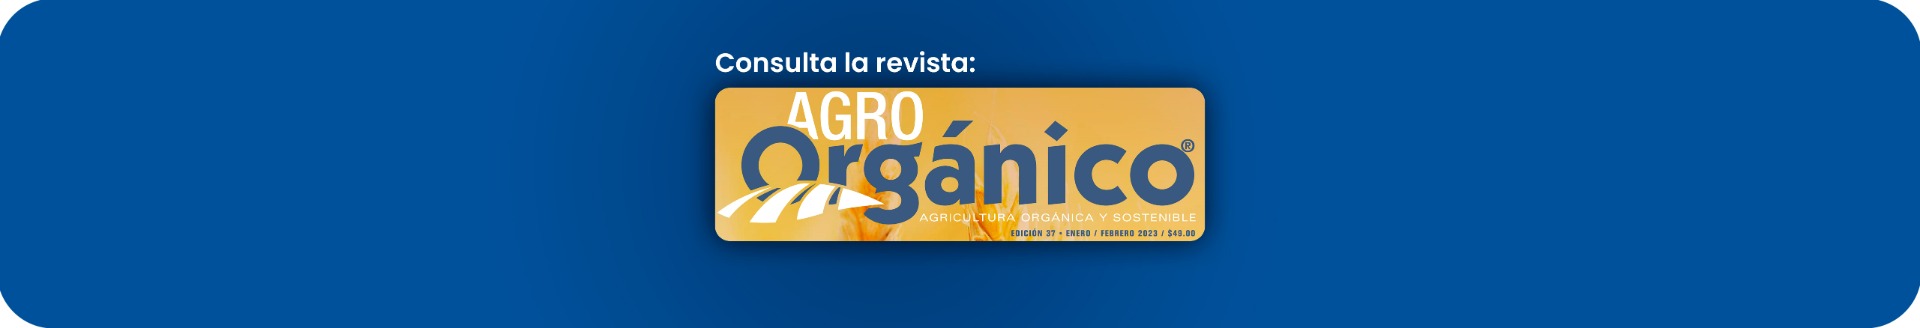 Consulta la Revista Agro Orgánico